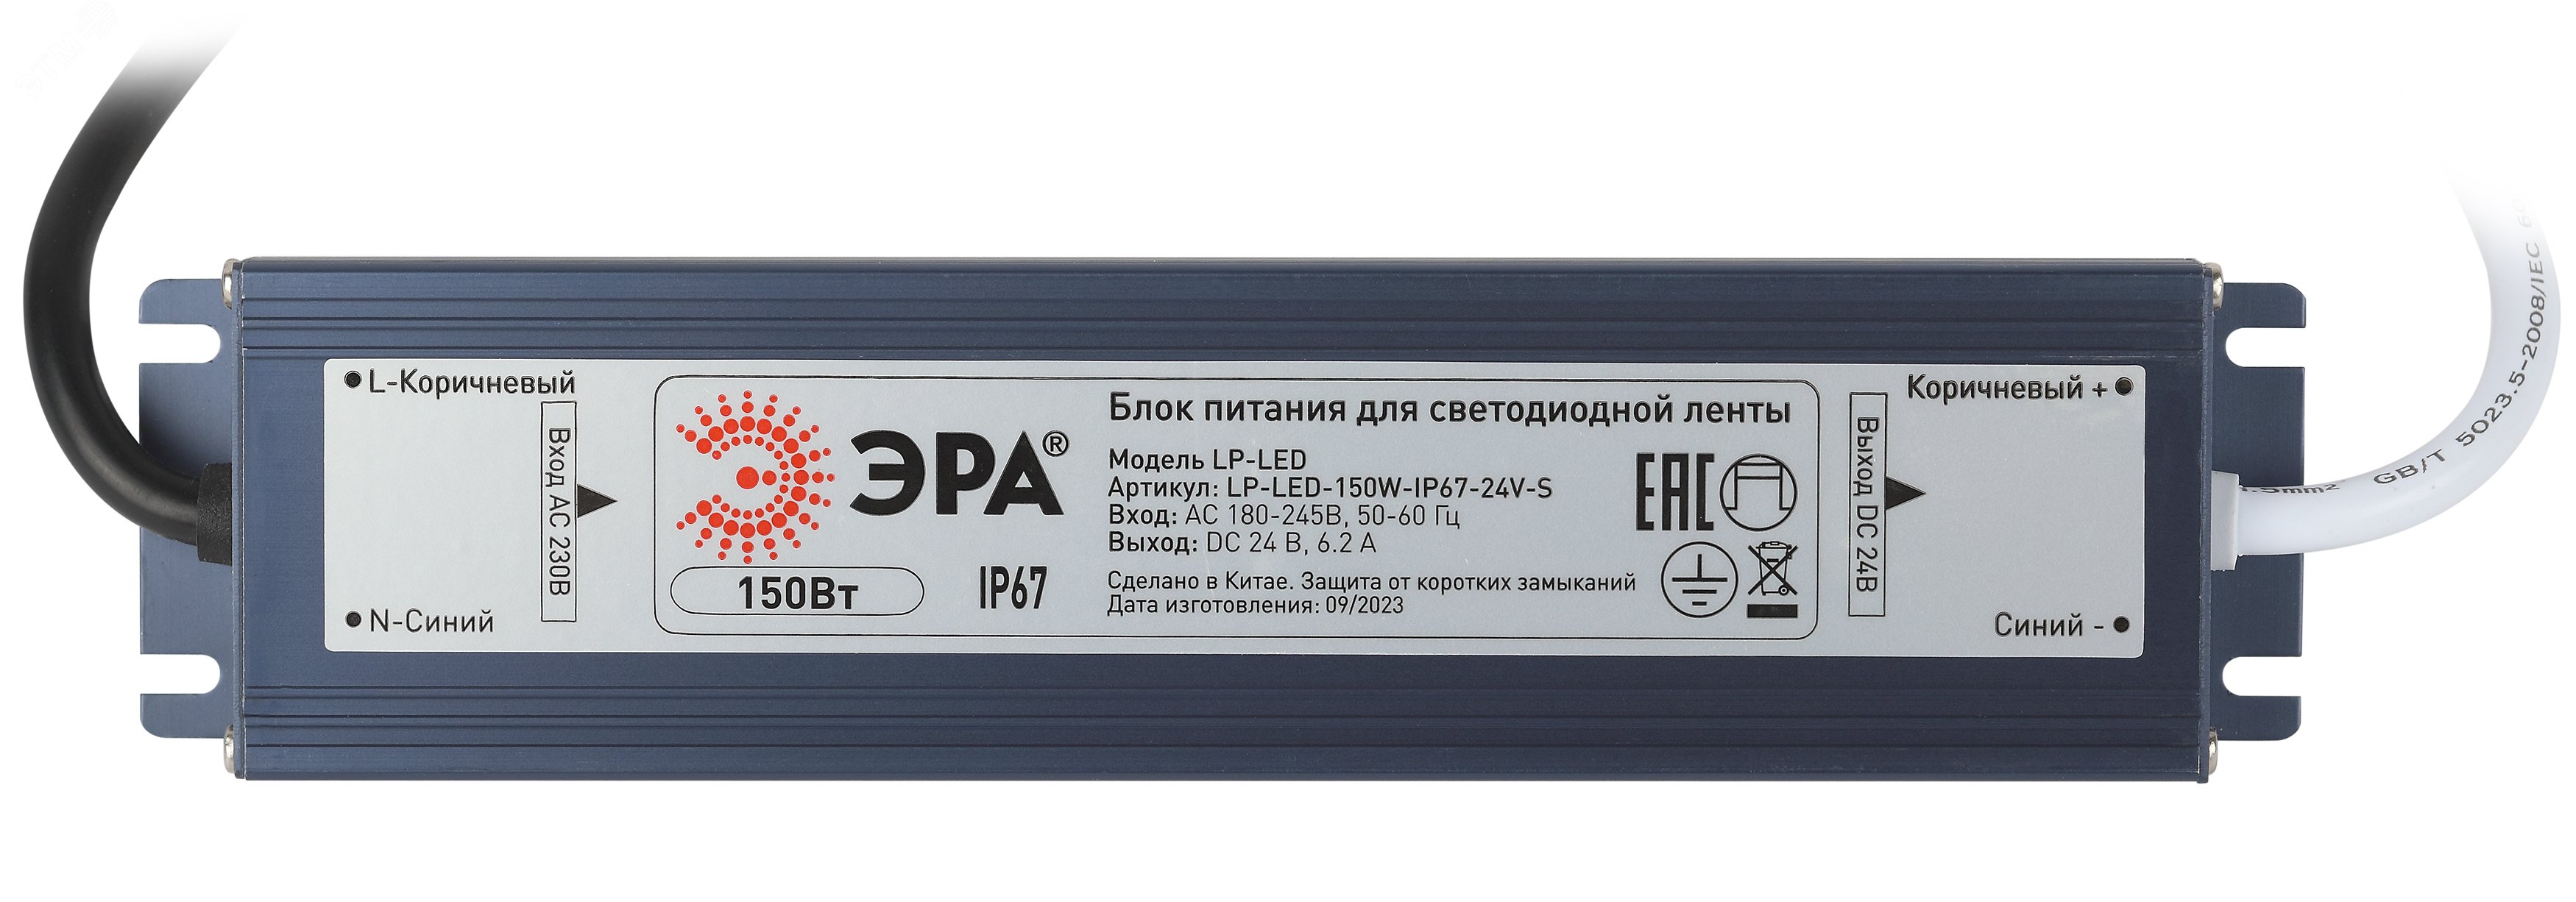 Блок питания для светодиодной ленты LP-LED 18W-IP20-12V-US Б0061149 ЭРА - превью 2